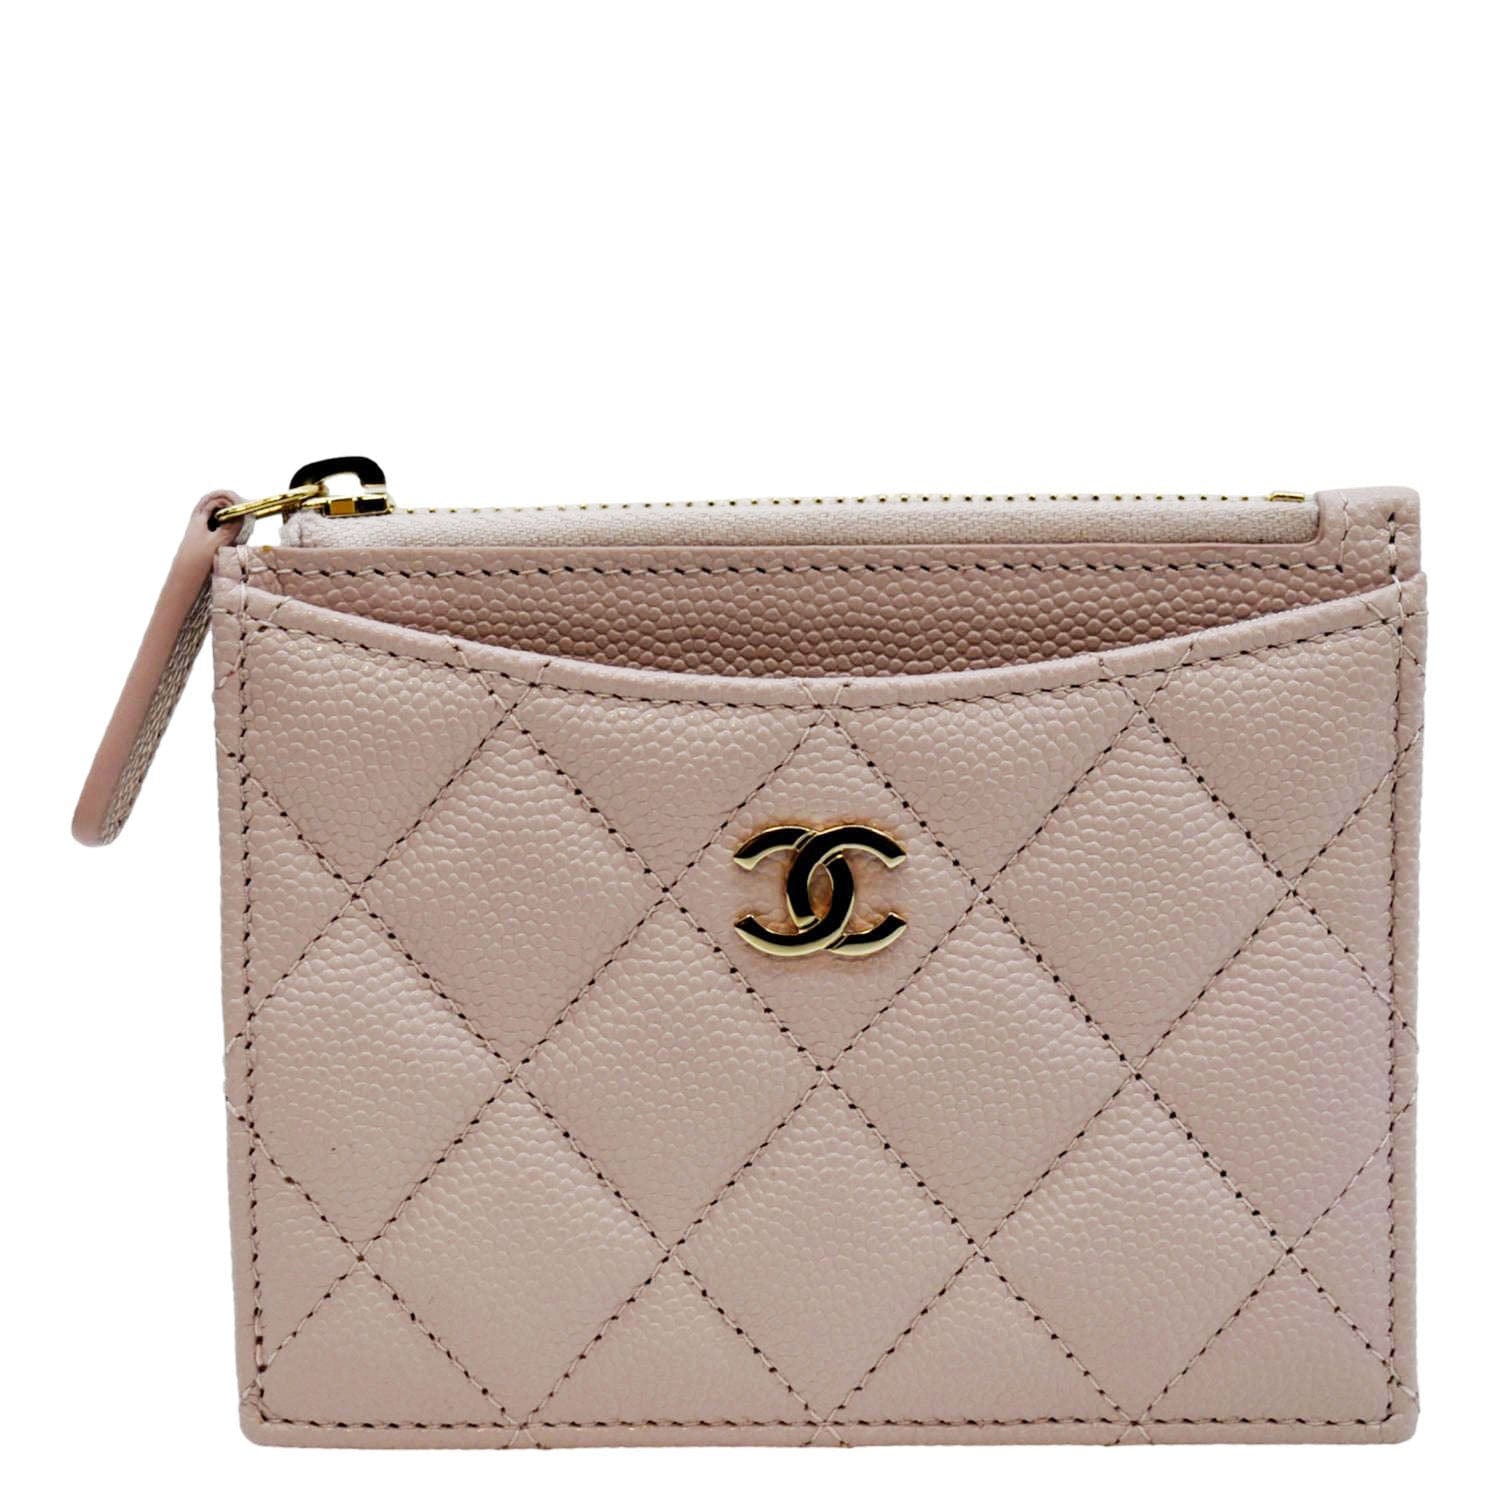 Chanel Card Holder  Chanel card holder, Chanel, Women handbags